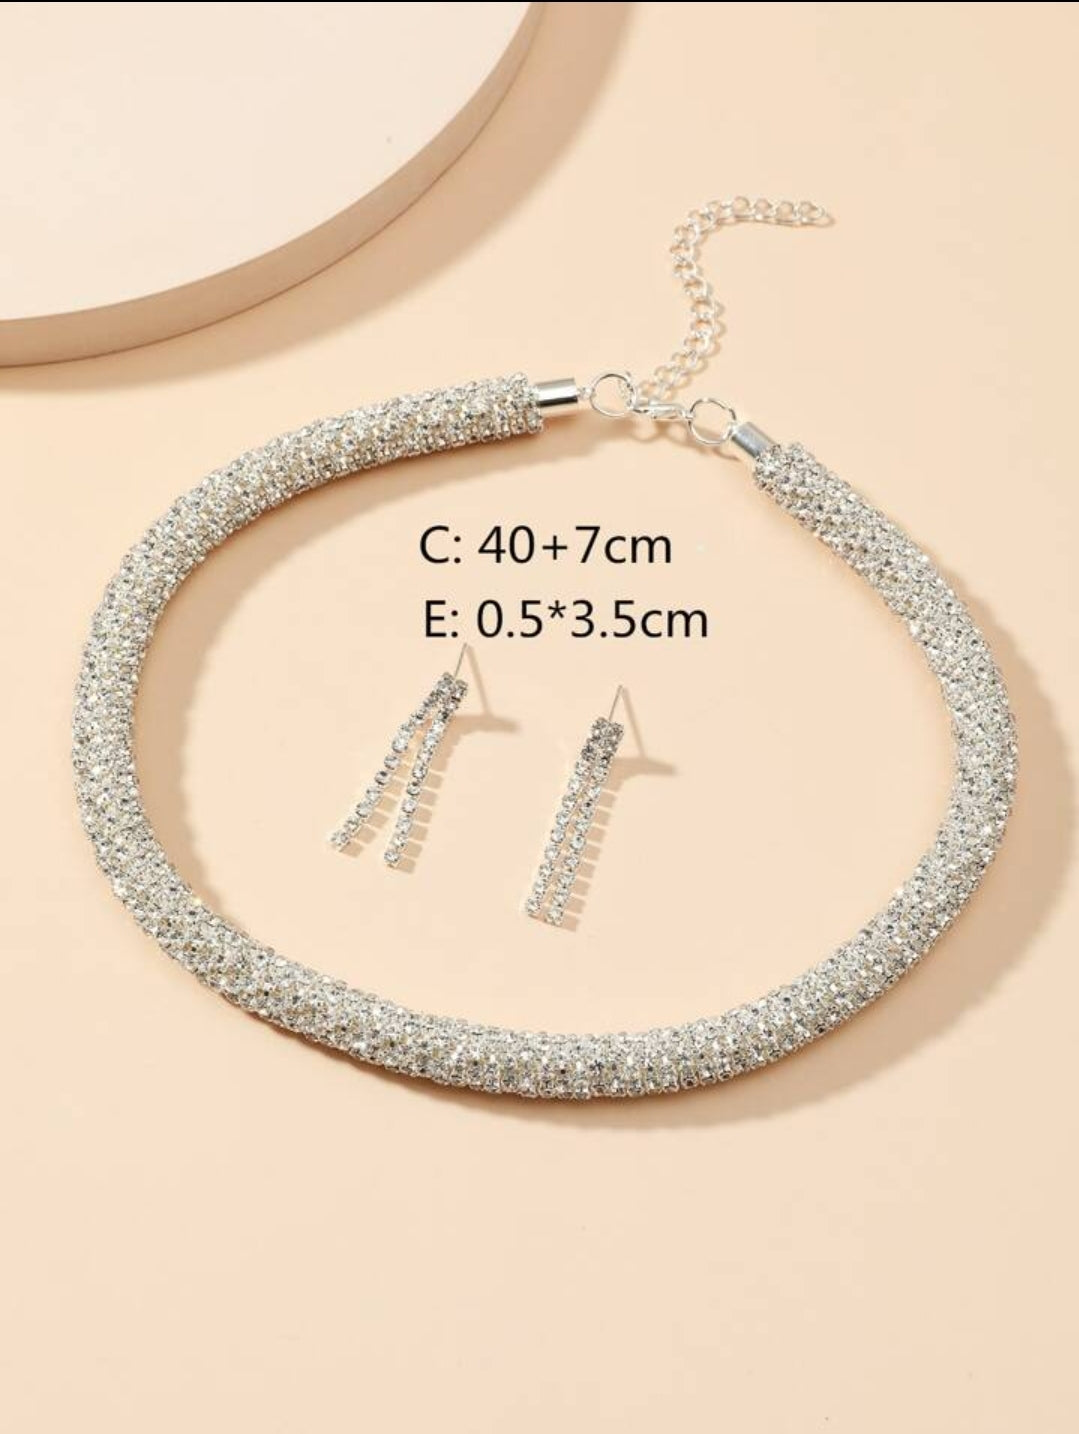 Crystal Encrusted Cord & Earrings Set